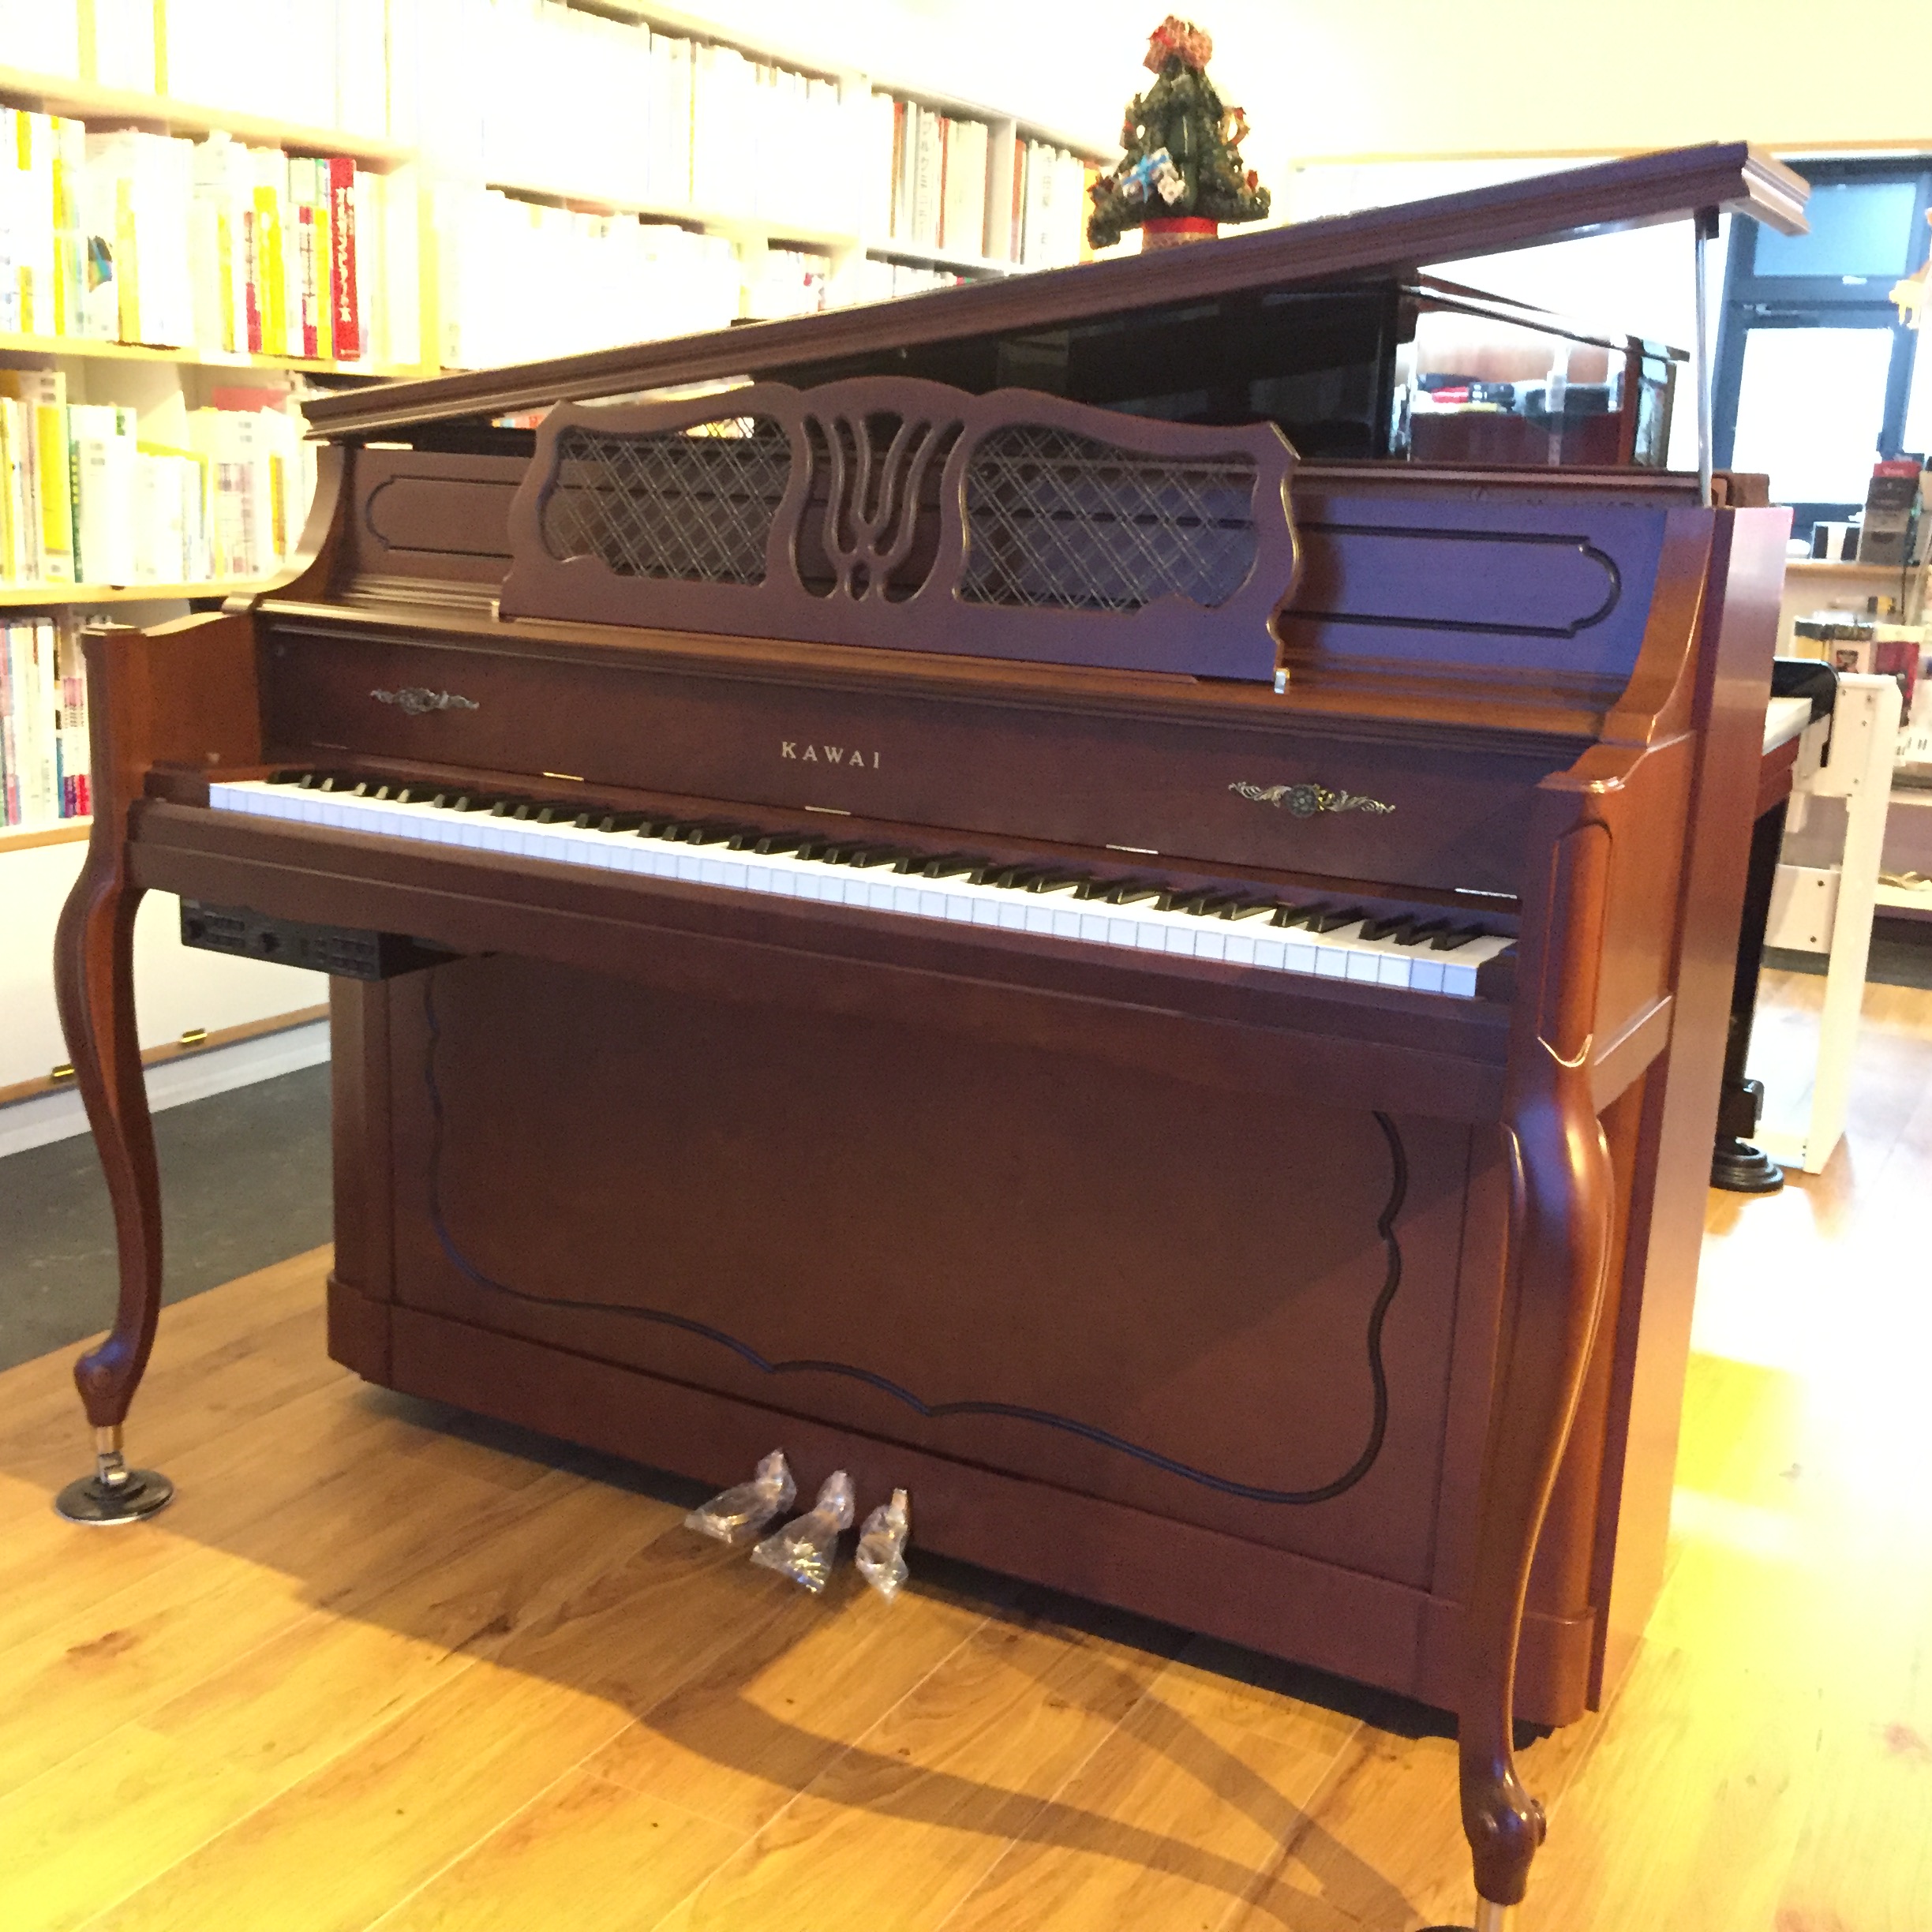 クリスマスプレゼントに 木目でアンティーク調のかわいいリニューアルピアノ 完成 古城楽器 熊本にあるピアノなどの楽器専門店 音楽教室も併設